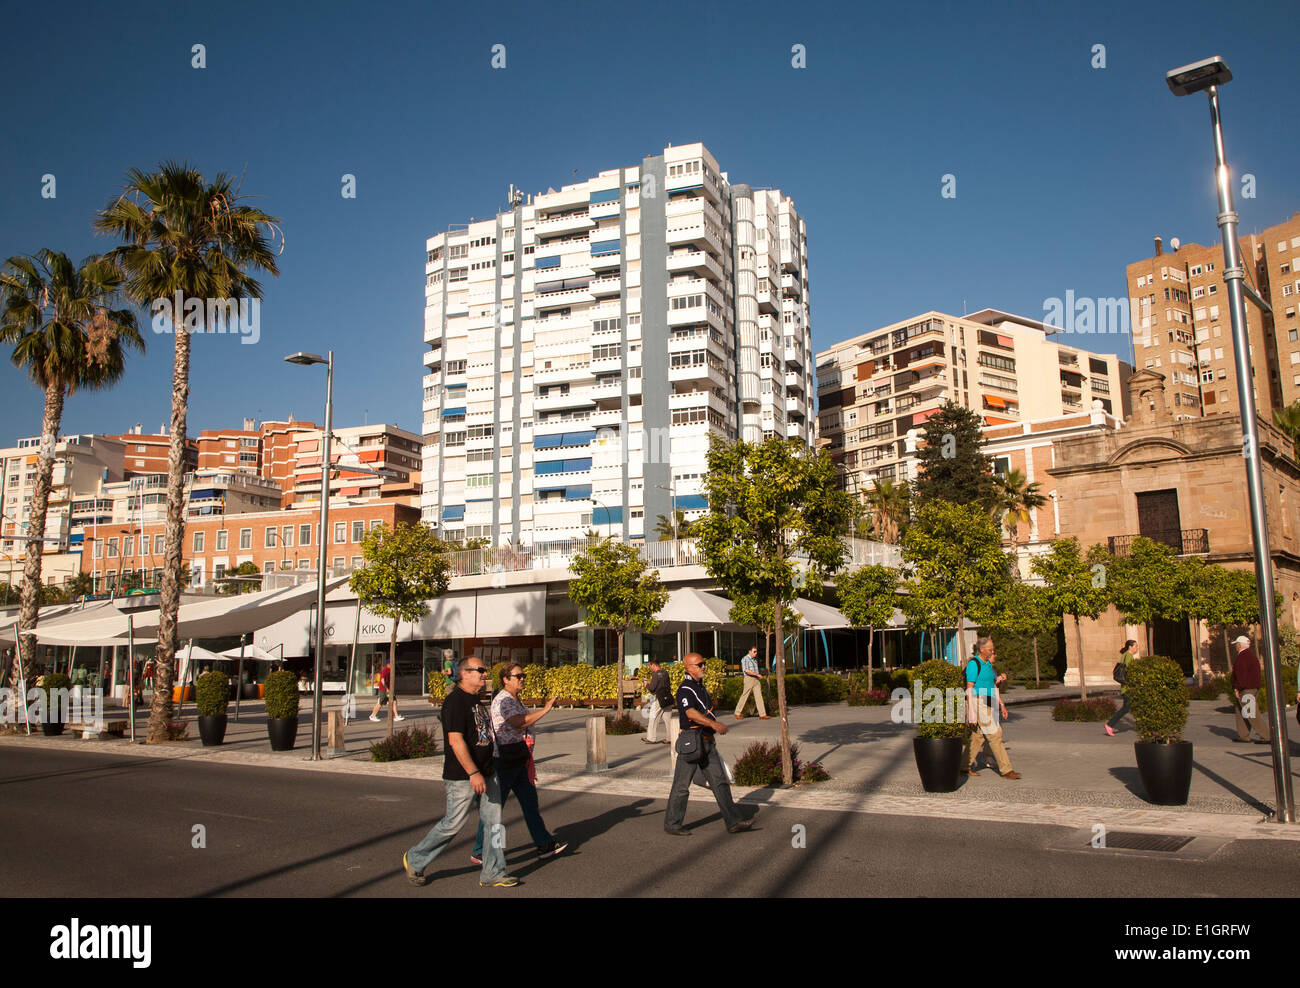 Les gens qui marchent dans la zone port nouvellement réaménagé de boutiques et bars Malaga, Espagne Muelle dos - Palmeral de las Sorpresas Banque D'Images